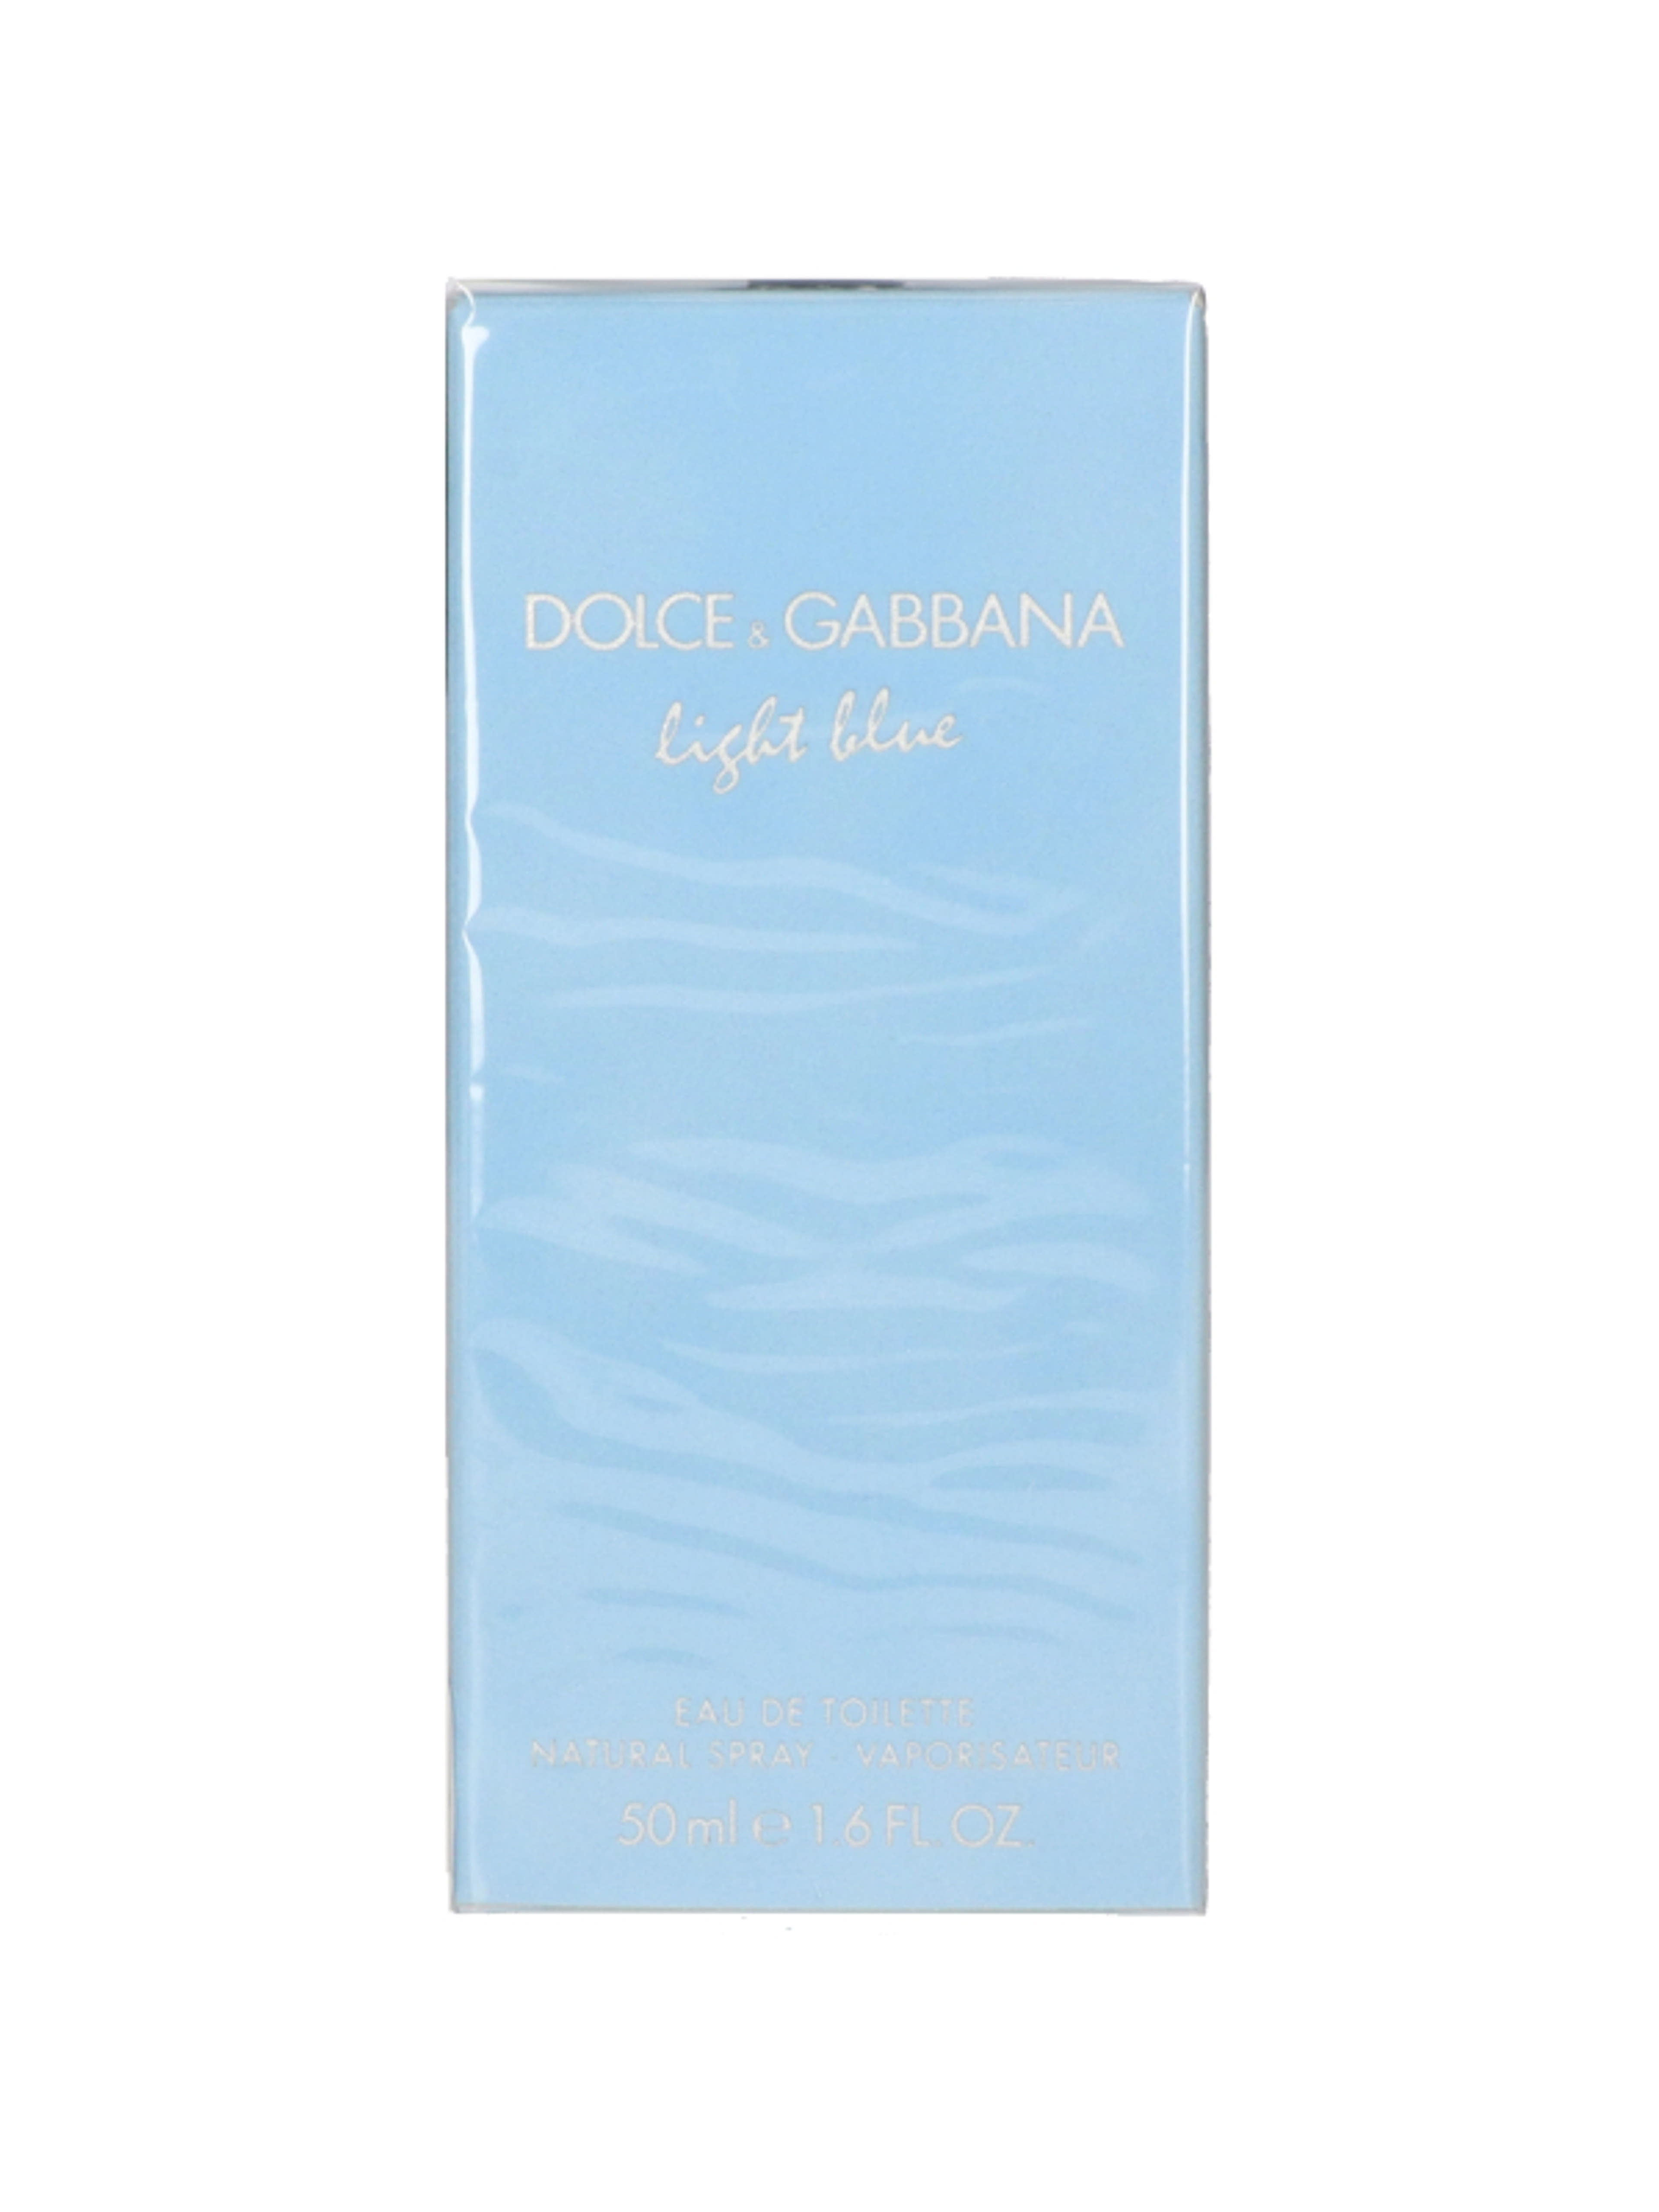 Dolce & Gabbana Light Blue noi Eau de Toilette - 50 ml